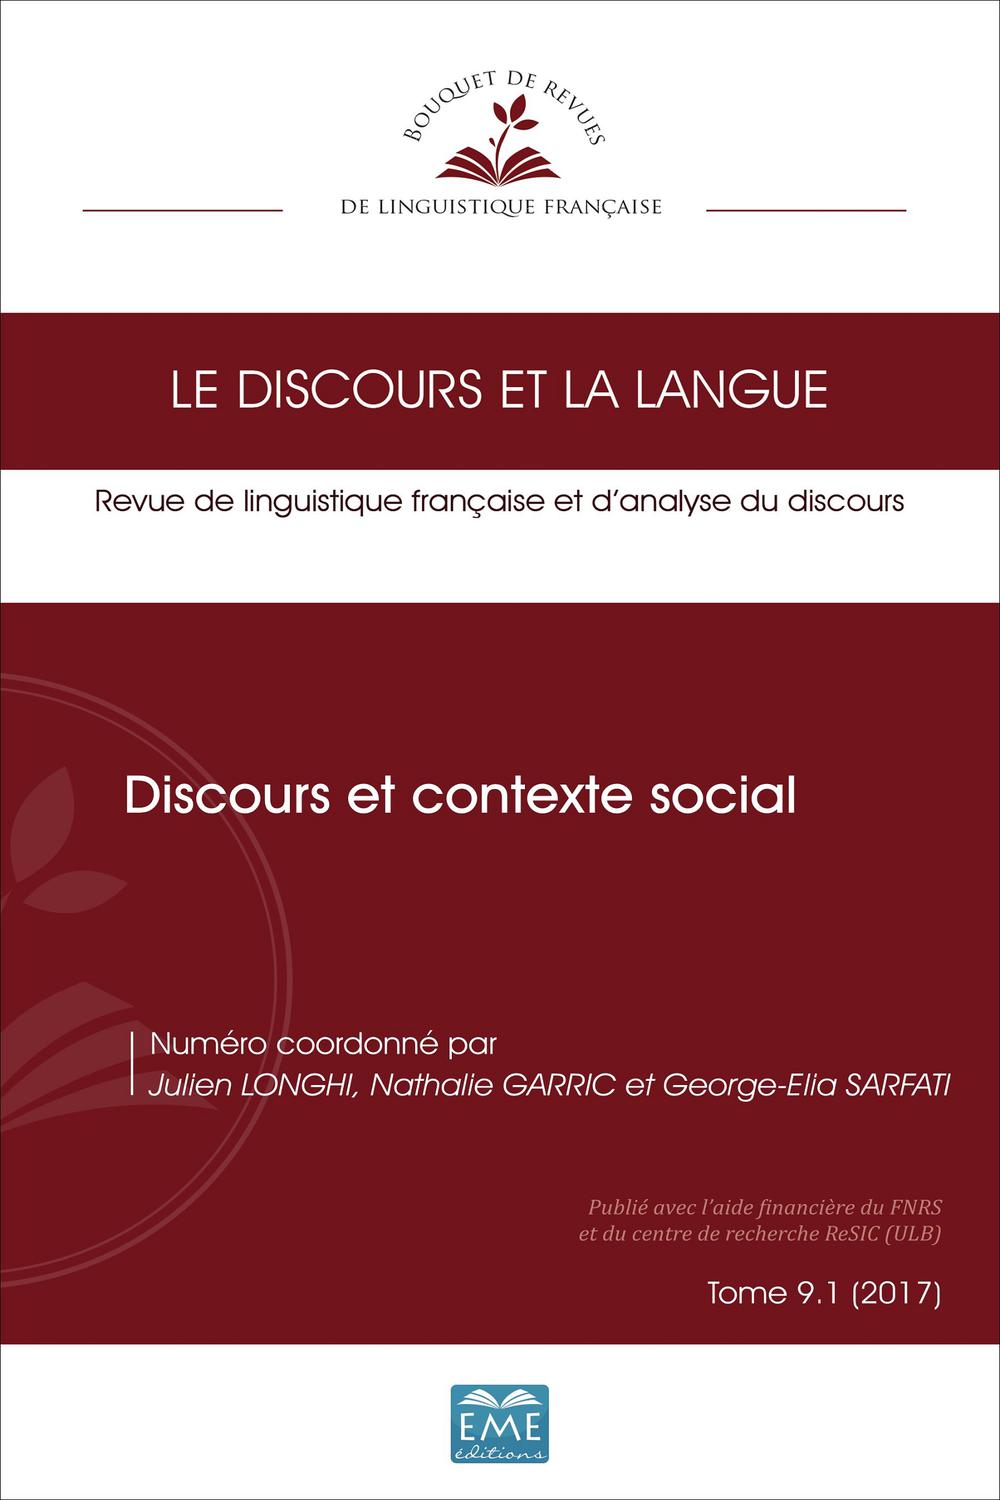 Discours et contexte social - Julien Longhi, Nathalie Garric, Georges-Elia Sarfati